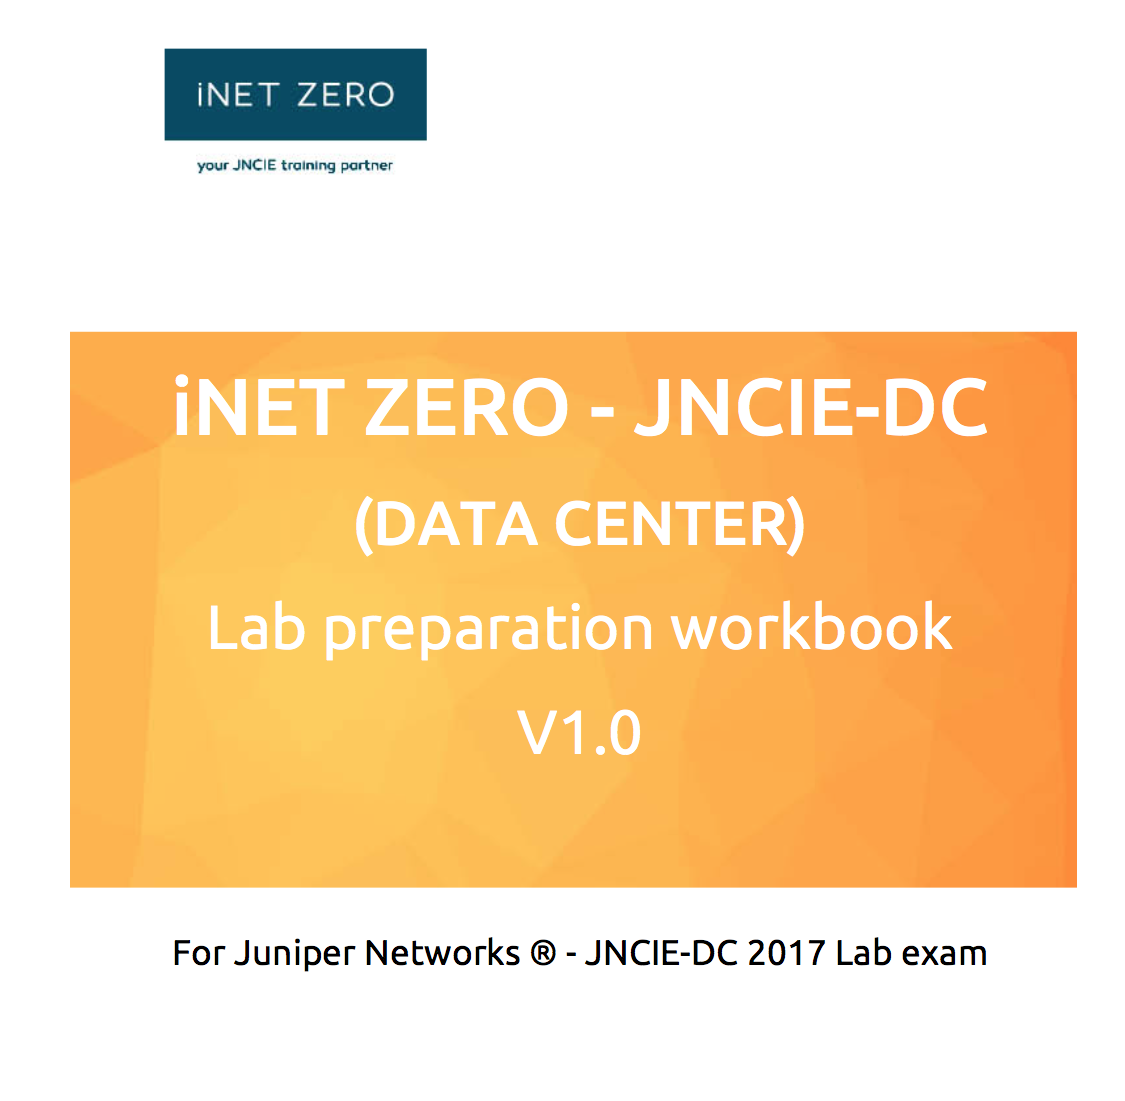 inetzero-jncie-dc-workbook-cover